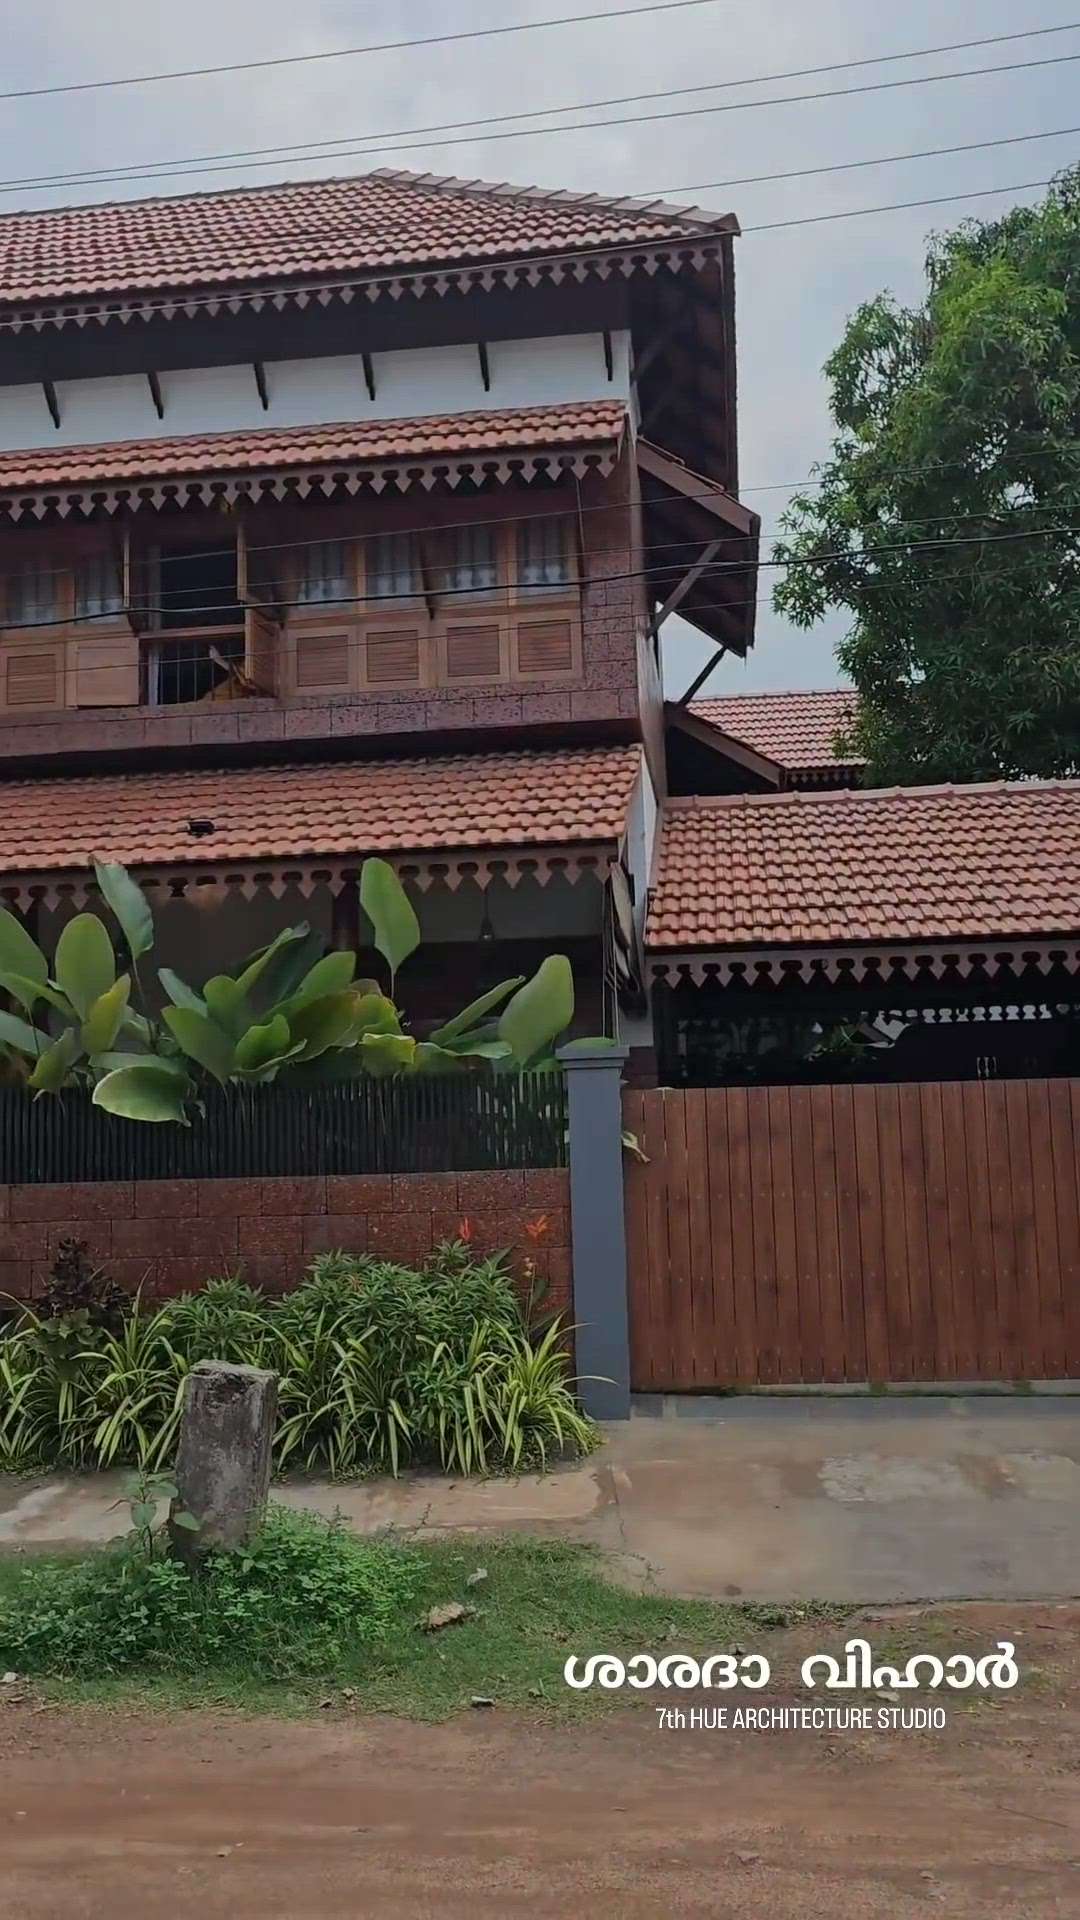 ശാരദ വിഹാർ | SARADA VIHAR 

An attempt to recreate tradition...

Project team: @ar.aziyahussain @ar.shyamraj Project execution: @nanda.hari.98 of VIEWPOINT PROJECT MANAGEMENT model: @aesth. girl

Credits: @ar.shyamraj

Kolo - India's Largest Home Construction Community

#residence #house #home #tropicalhouse #home #keralahomes #budgethome #tropicalarchitecture #landscape #landscapedesign #insideoutside #spaces #instahomes #keralahomes #architecture #homedecor #interiordesign #house #keralahomestyle #keralahouse